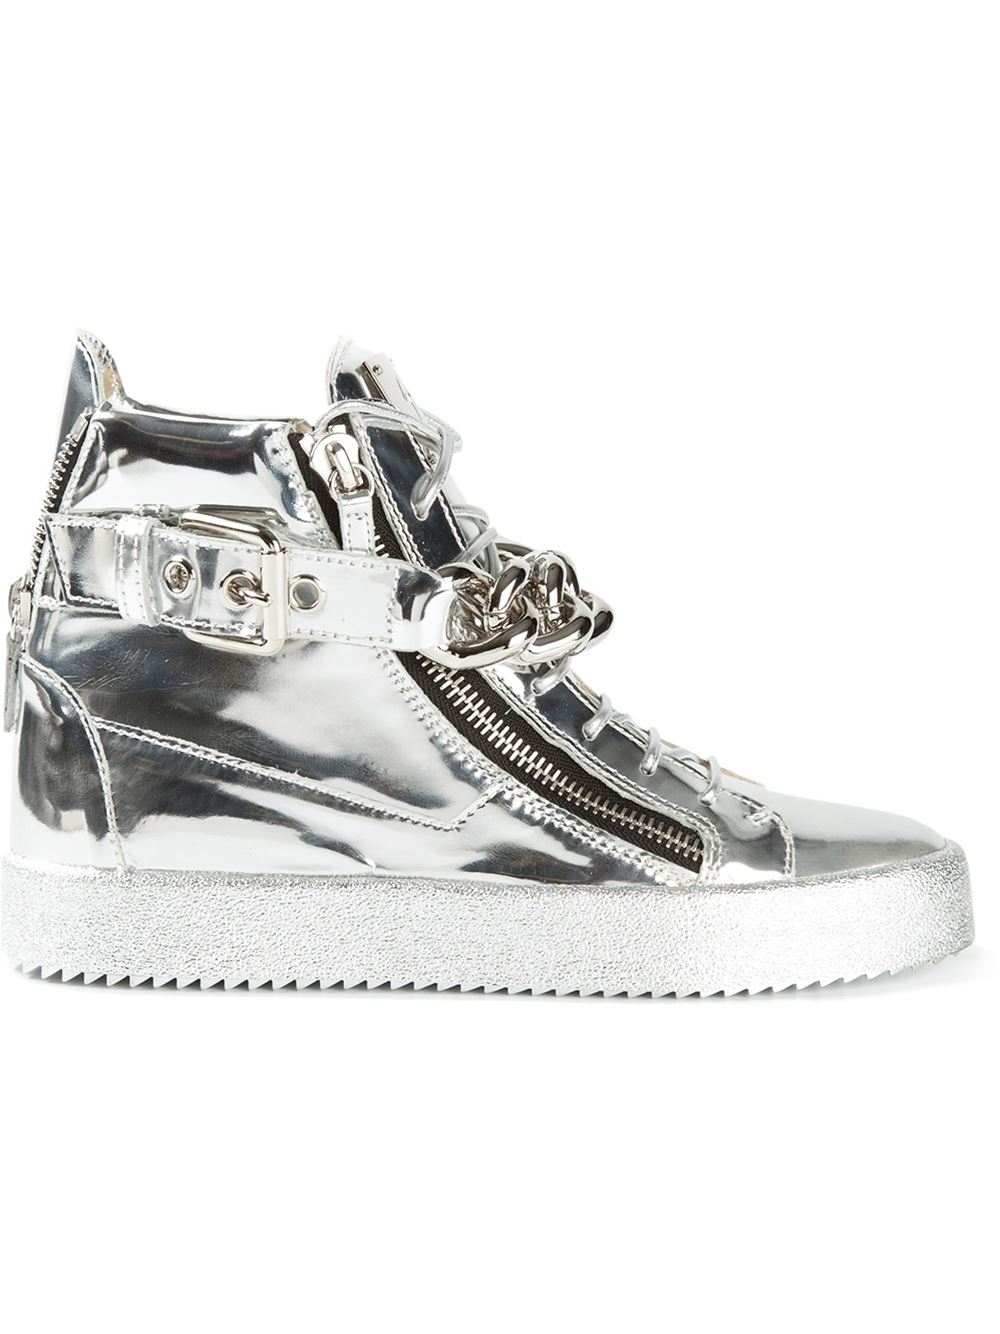 Giuseppe Zanotti Metallic Hi-Top Sneakers in Silver ...